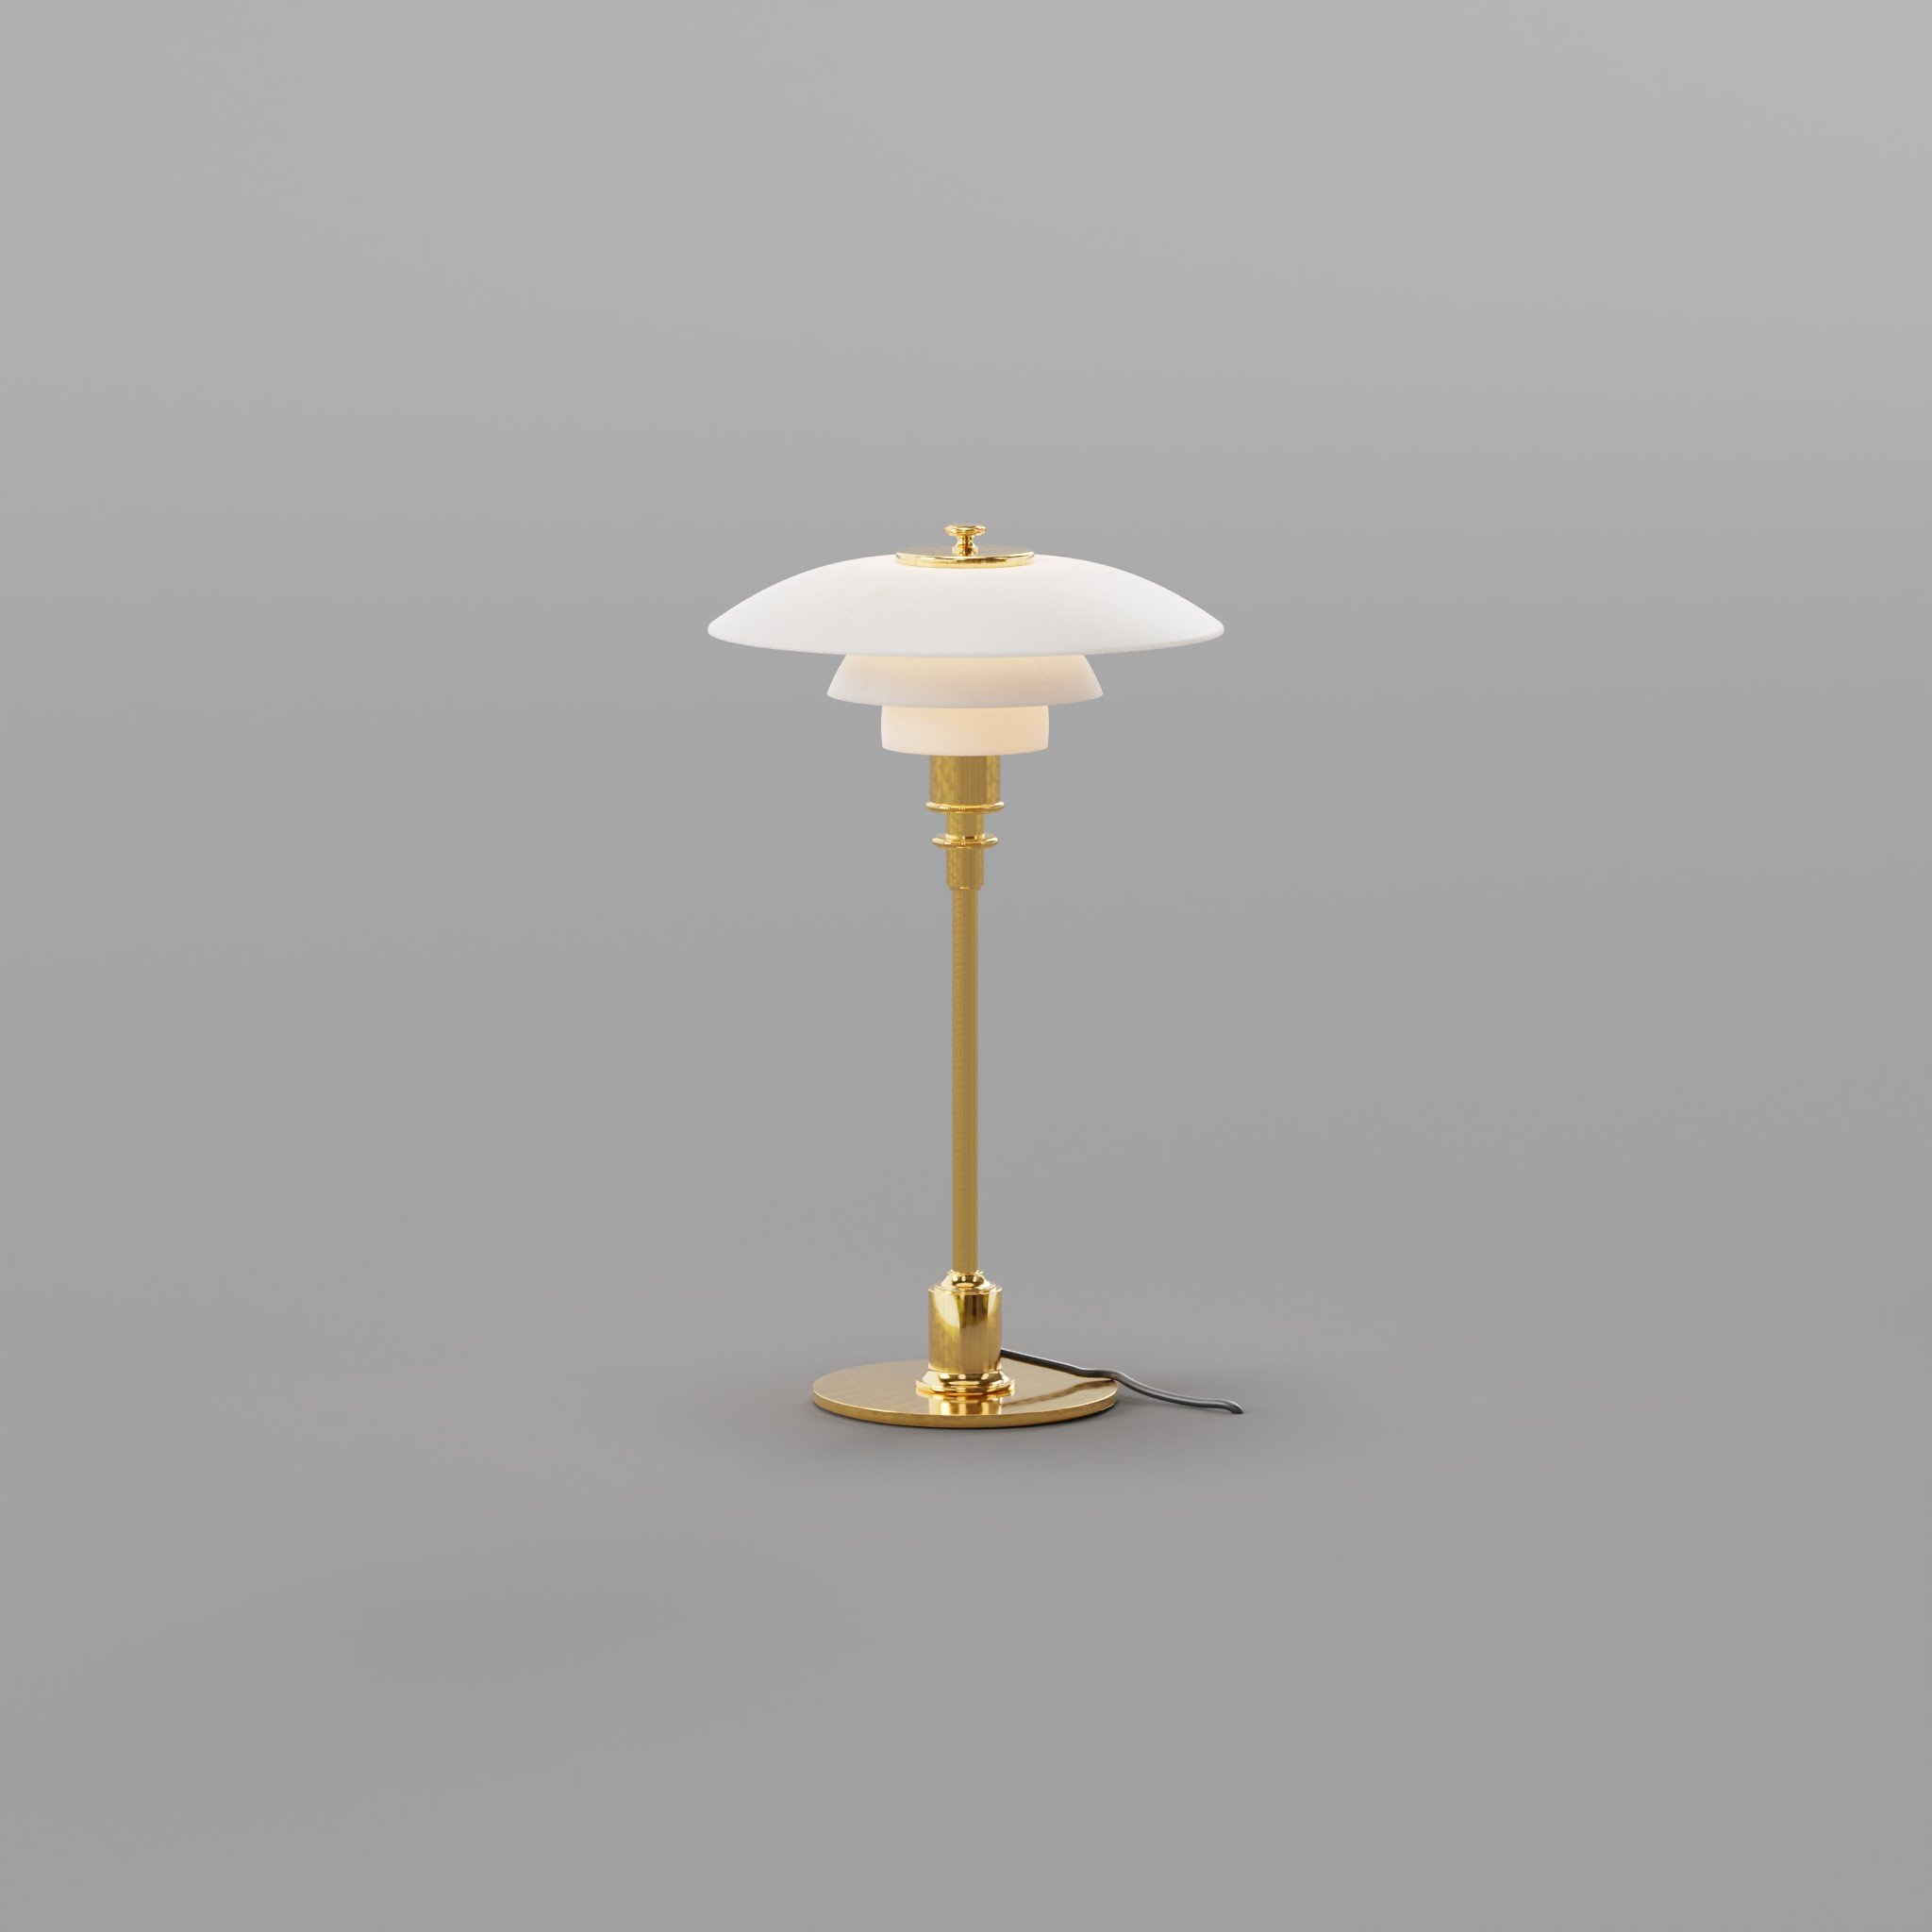 PH 5 Lamp - 8 Colors with IES - Louis Poulsen - 3D Model 3D model